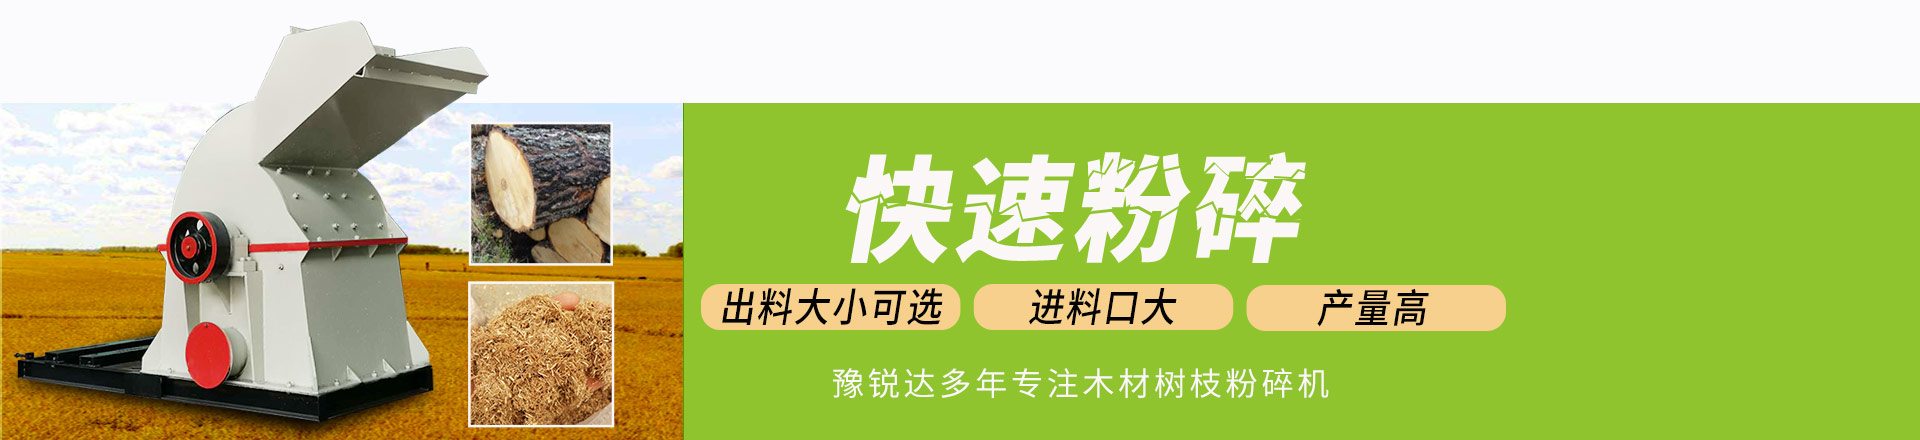 pg游戏官网 - 中国官方网站多年专注木材树枝粉碎机